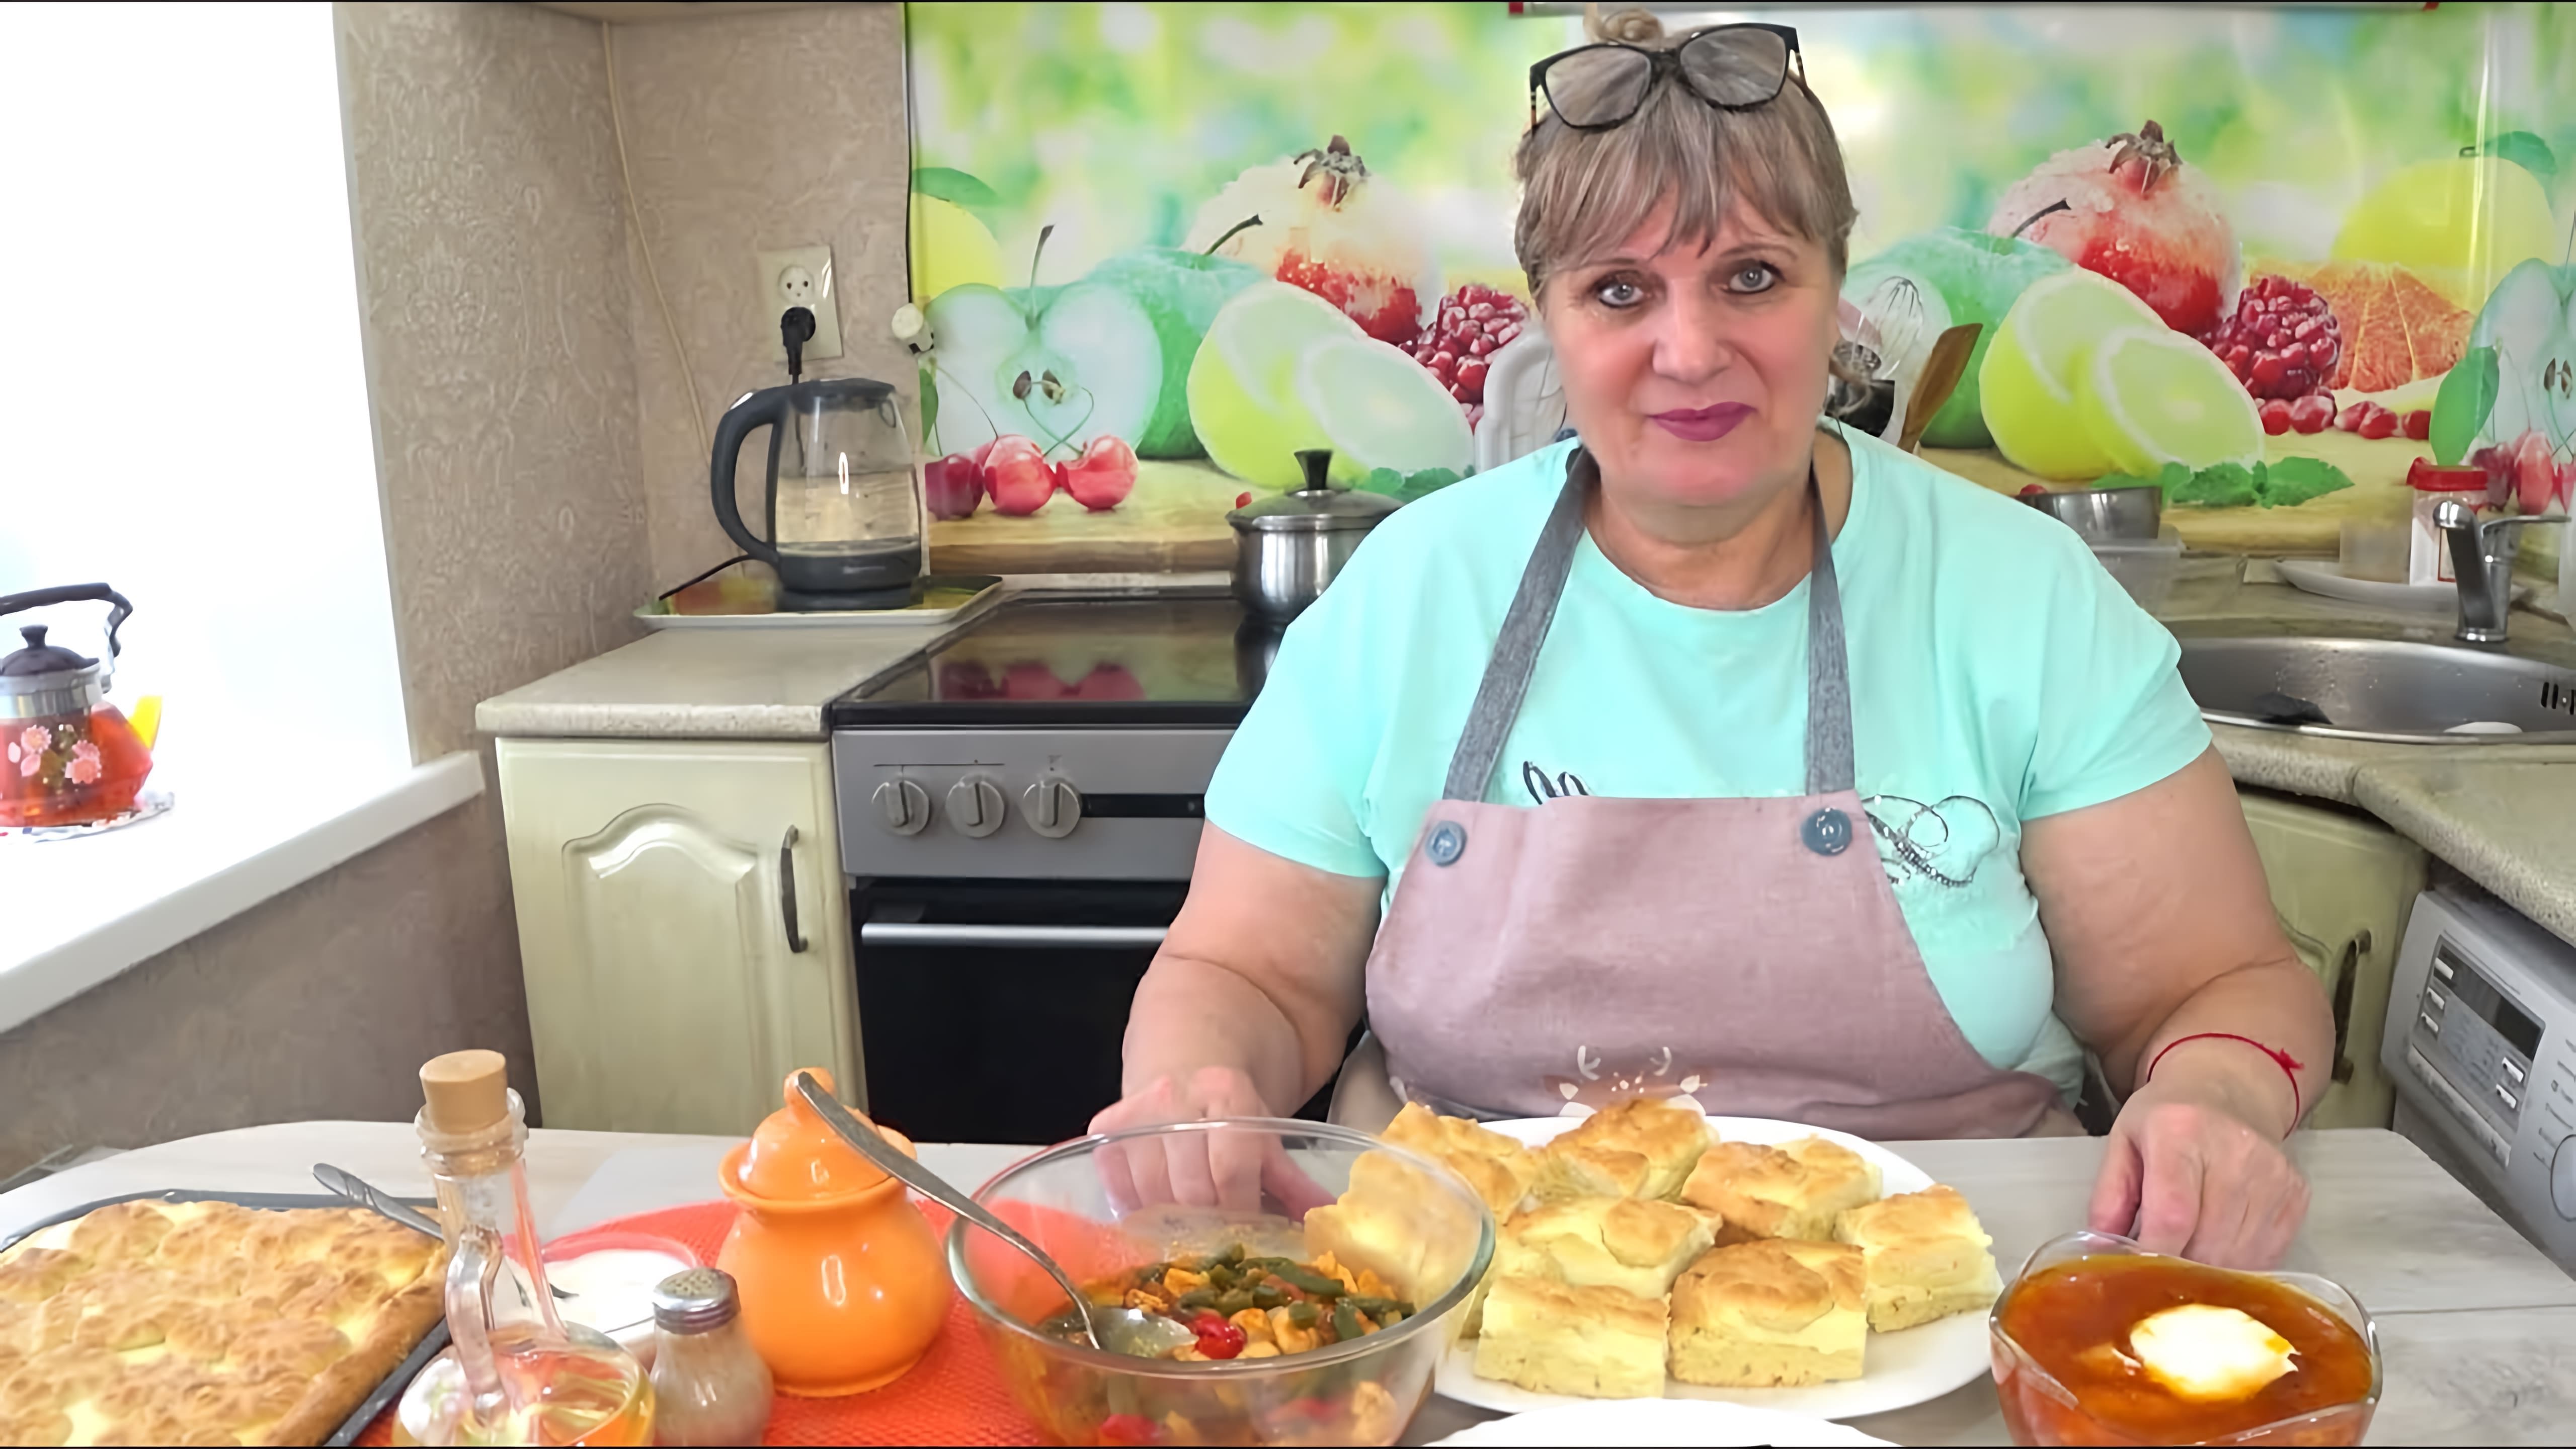 В этом видео автор показывает, как приготовить меню на два дня, состоящее из завтрака, обеда и ужина